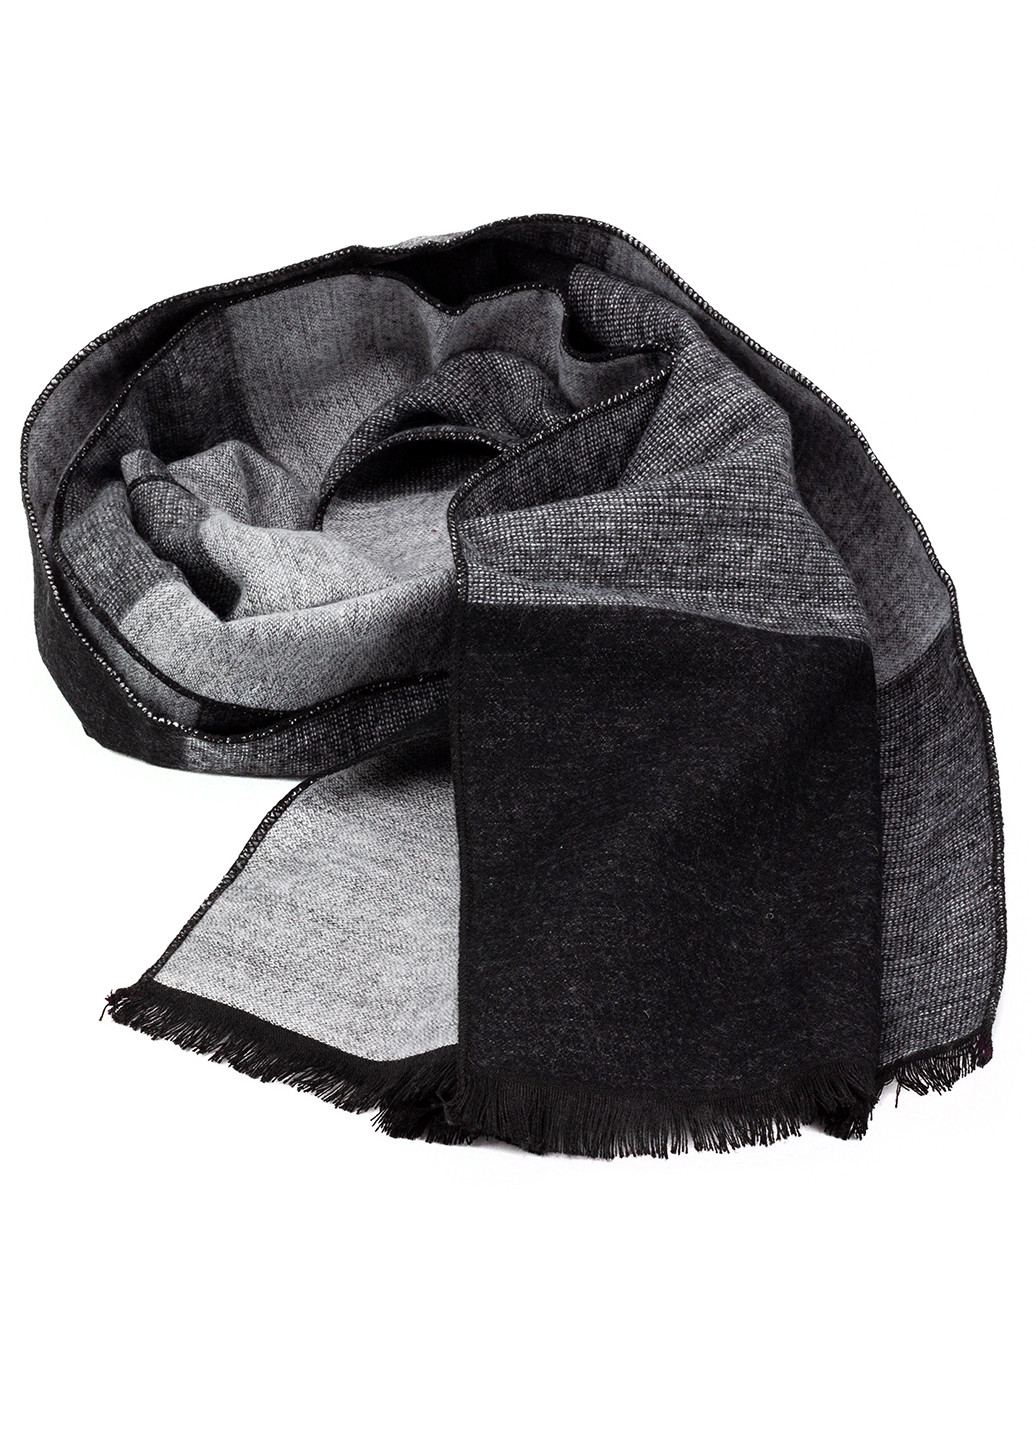 Мужской шарф в клетку черный с серым LuxWear ms2011 (251712967)